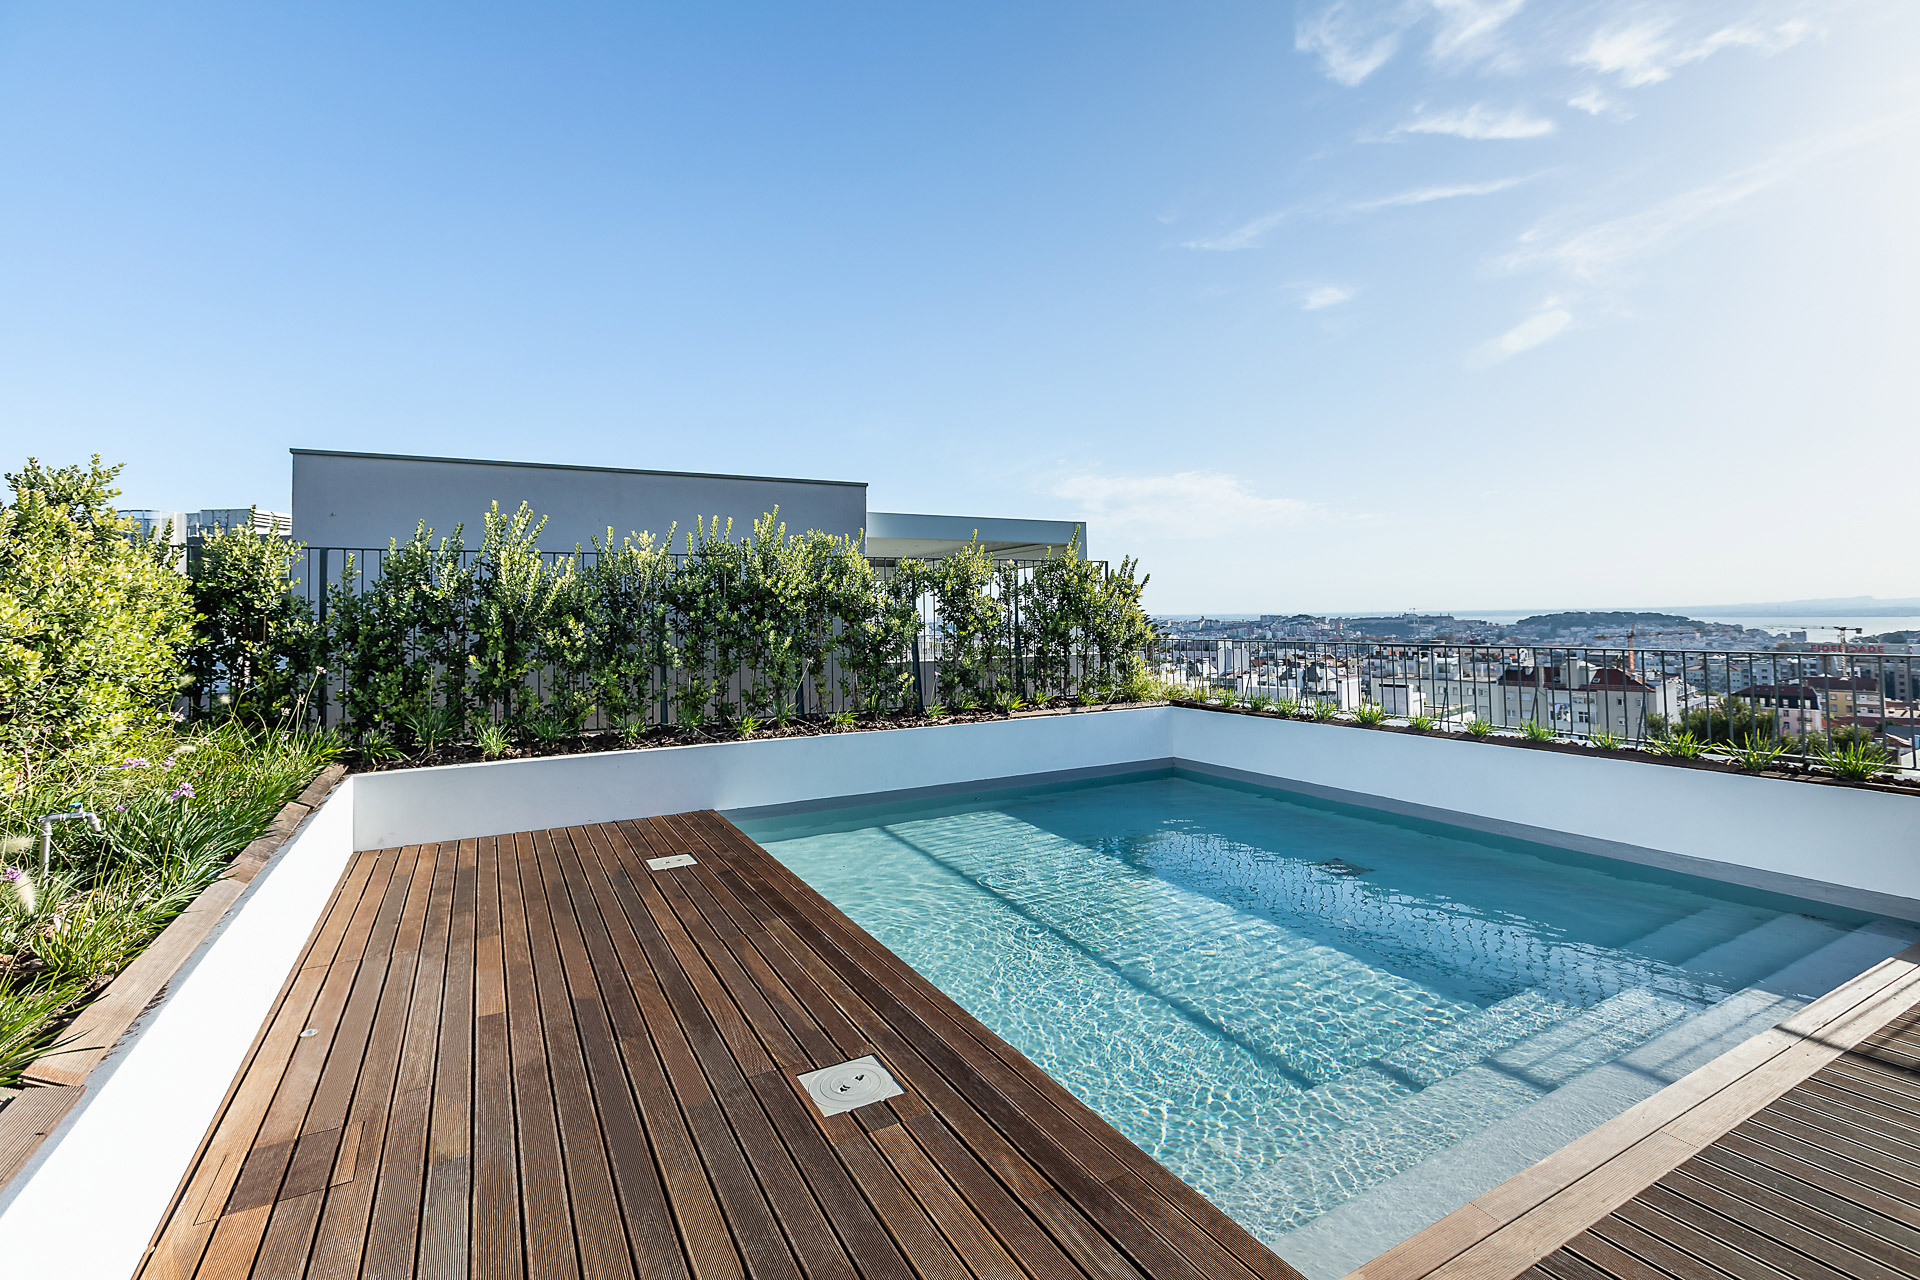 Fotografia de Arquitectura - Fotografia do topo de edificio de apartamentos com piscina